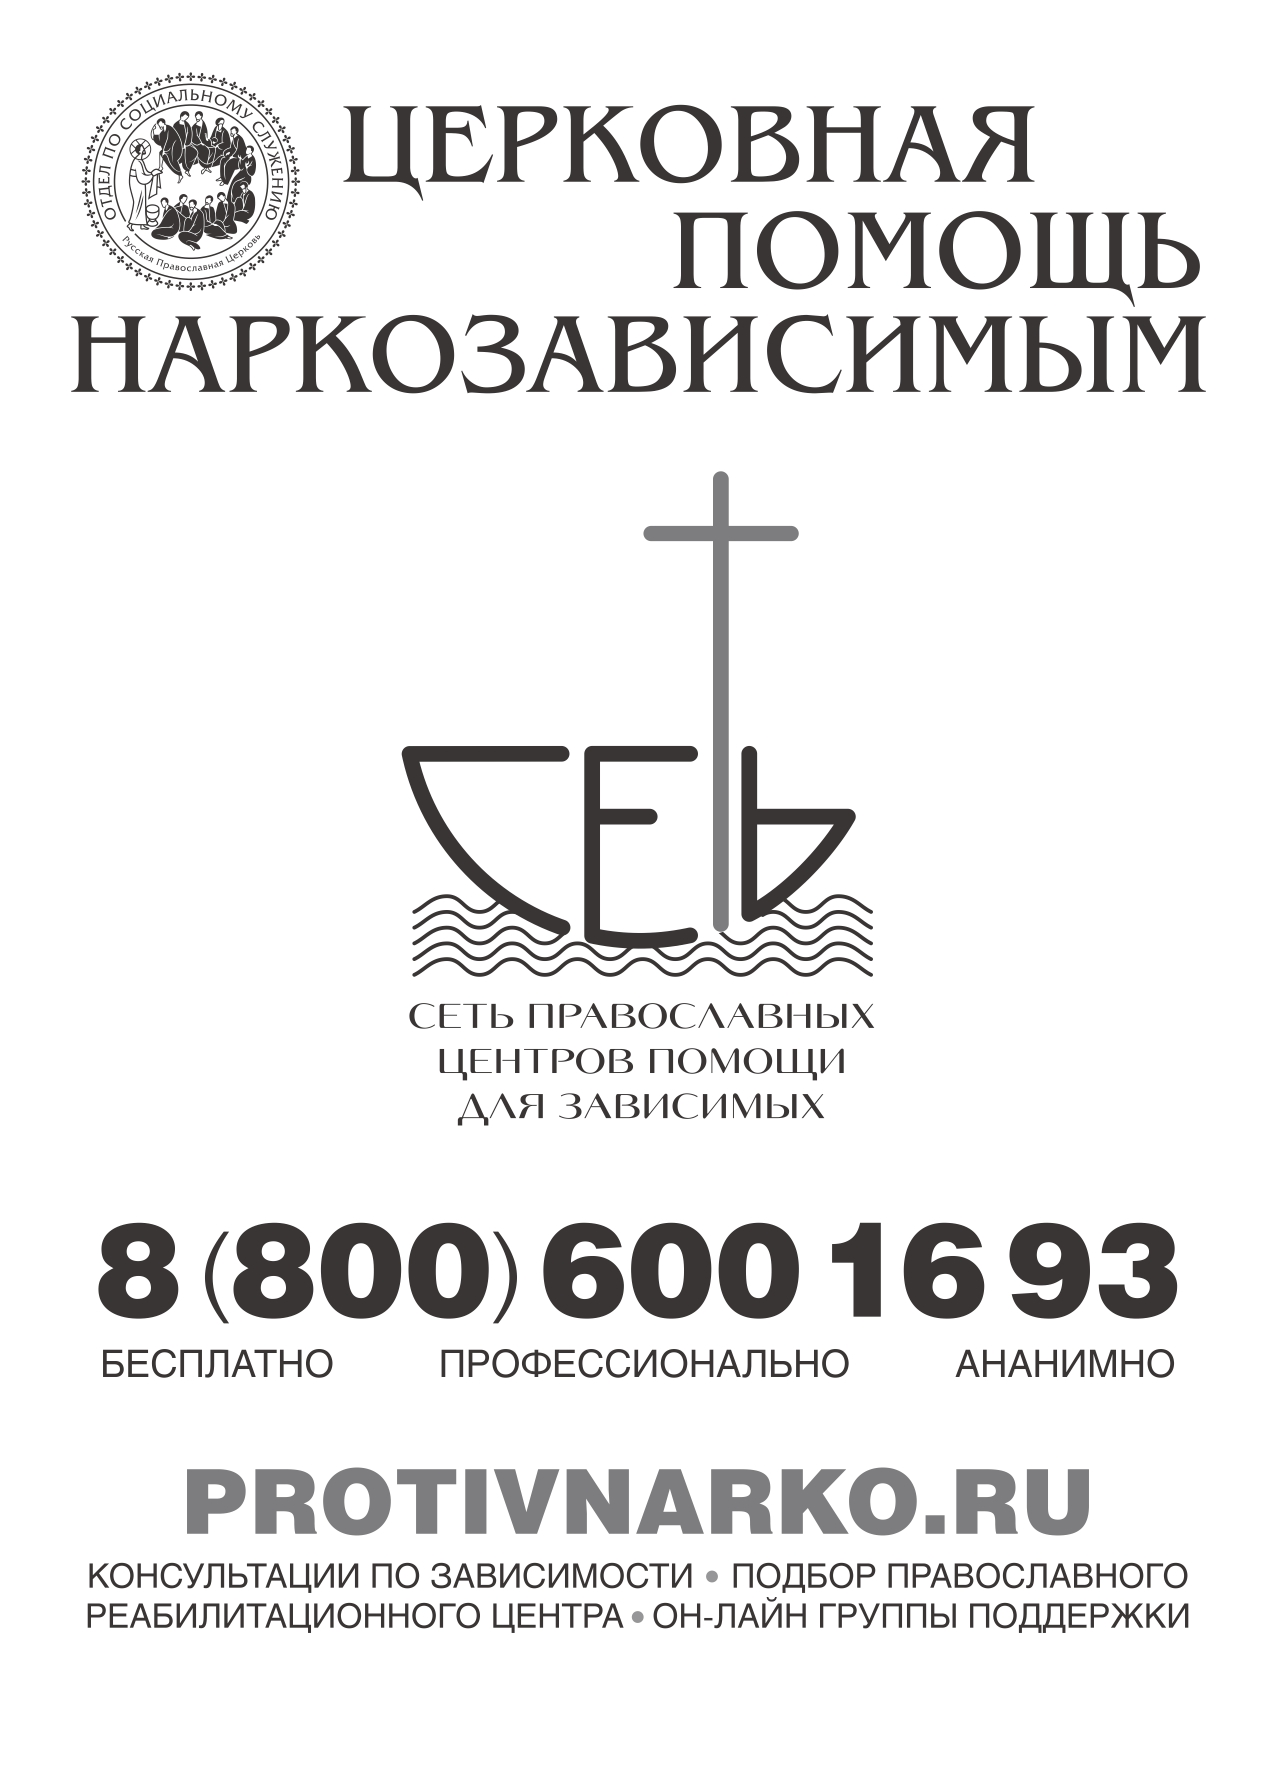 Вы сейчас просматриваете В Церкви создана структура православных центров реабилитации для зависимых «Сеть»